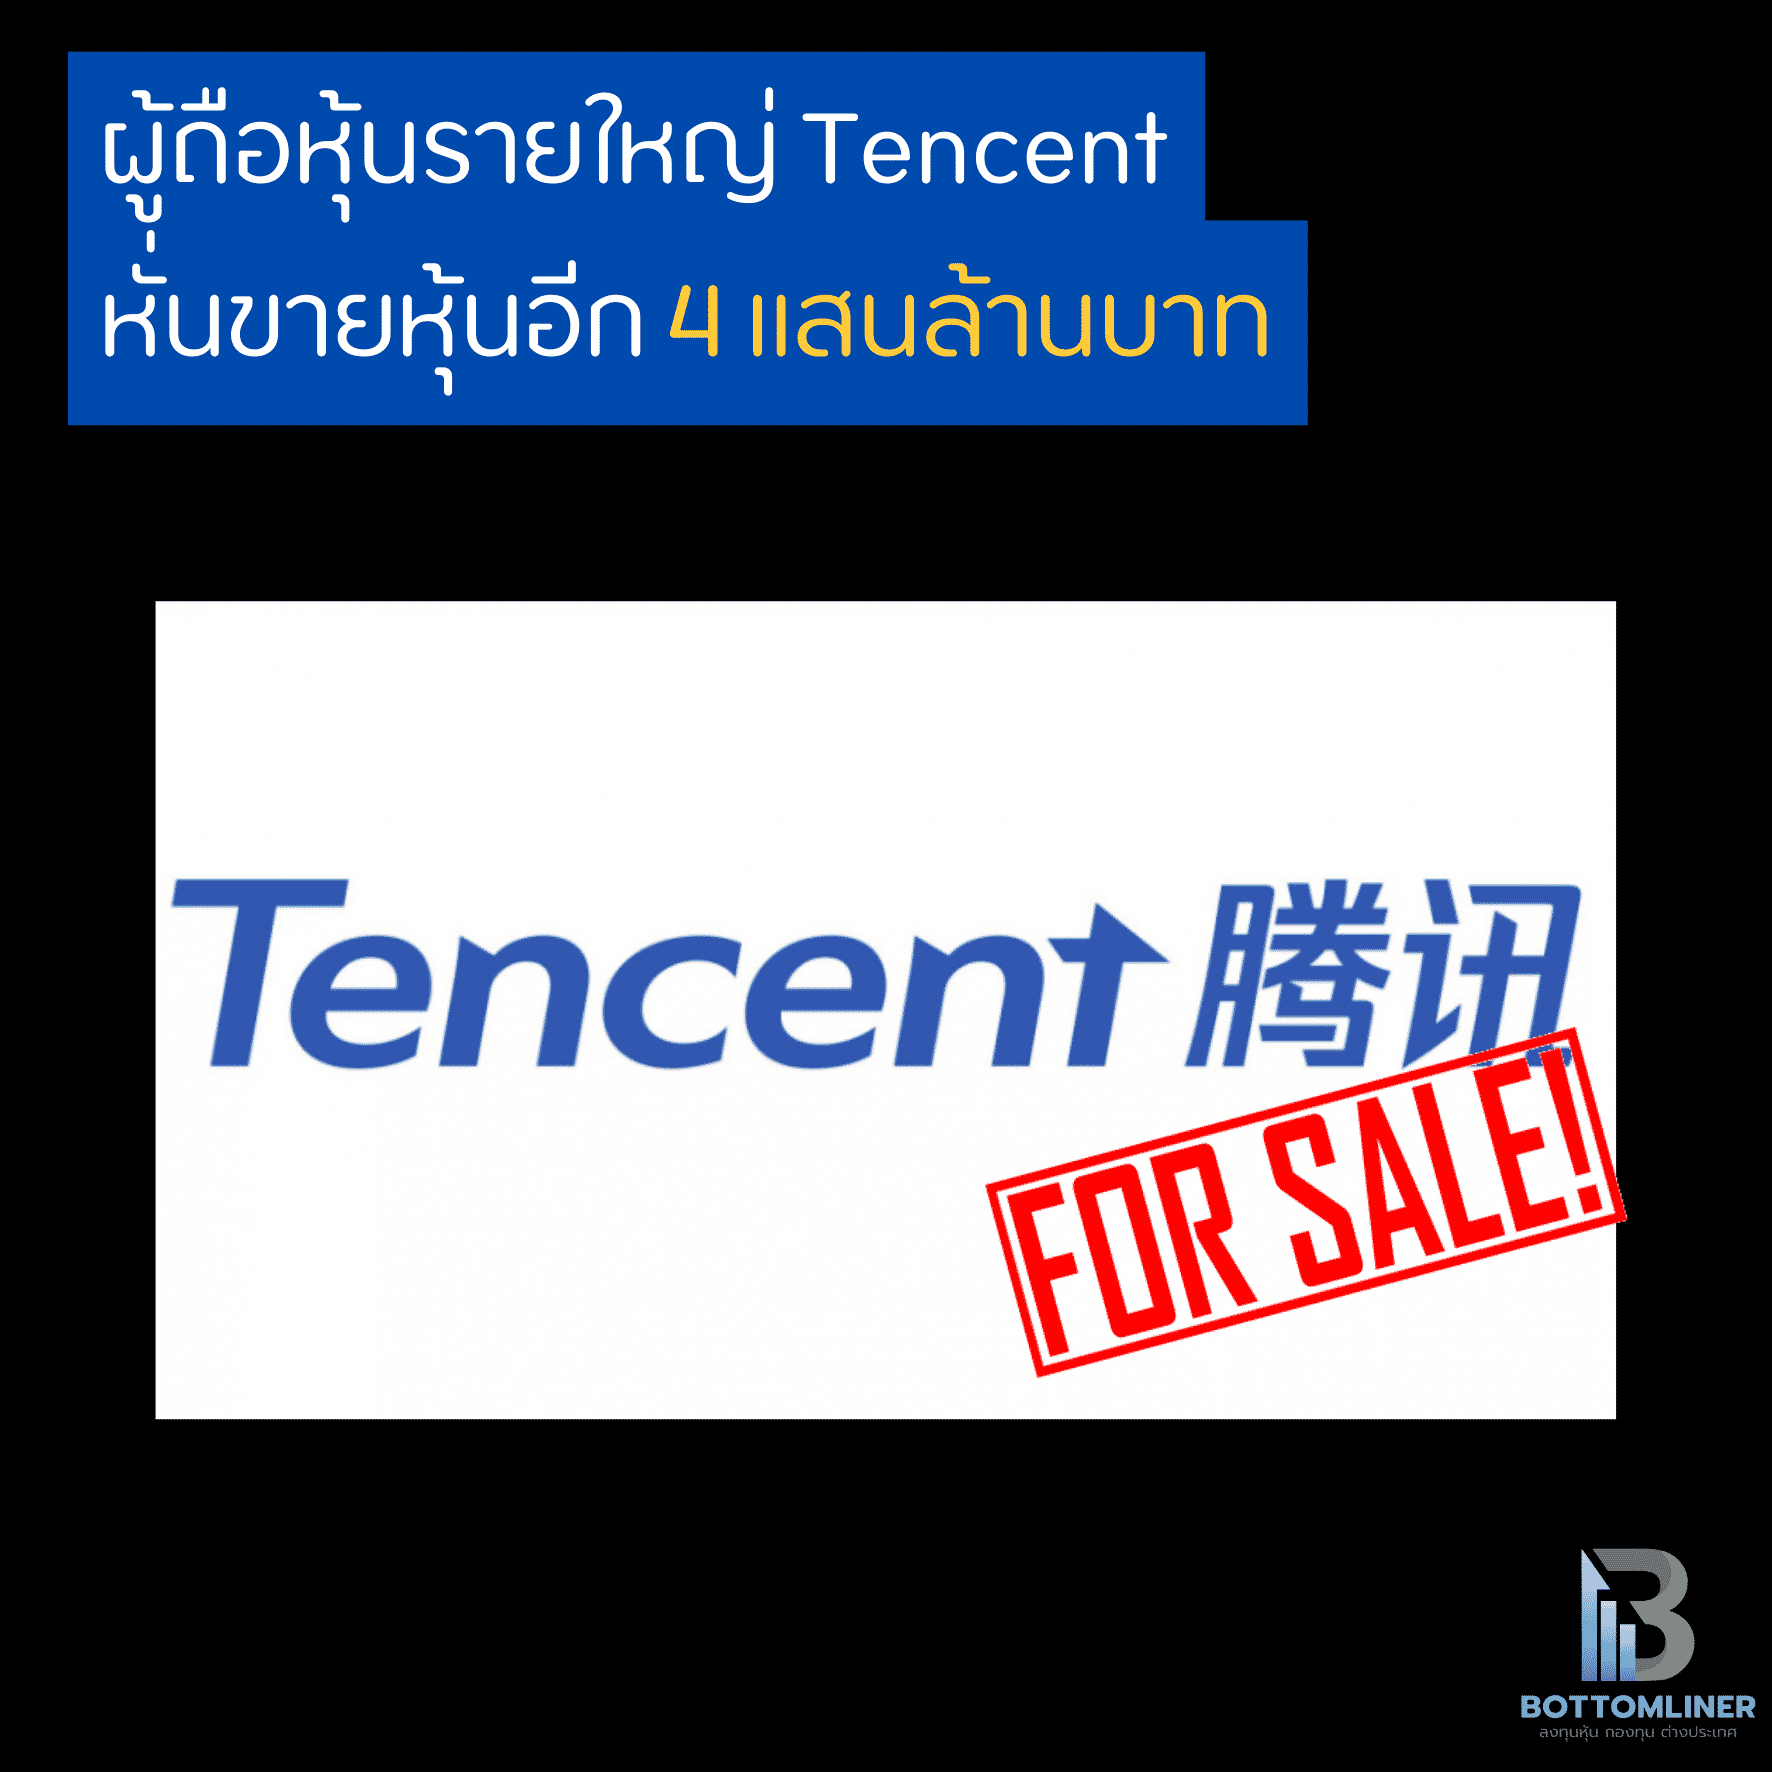 ผู้ถือหุ้นรายใหญ่ Tencent หั่นขายหุ้นอีก 4 แสนล้านบาท